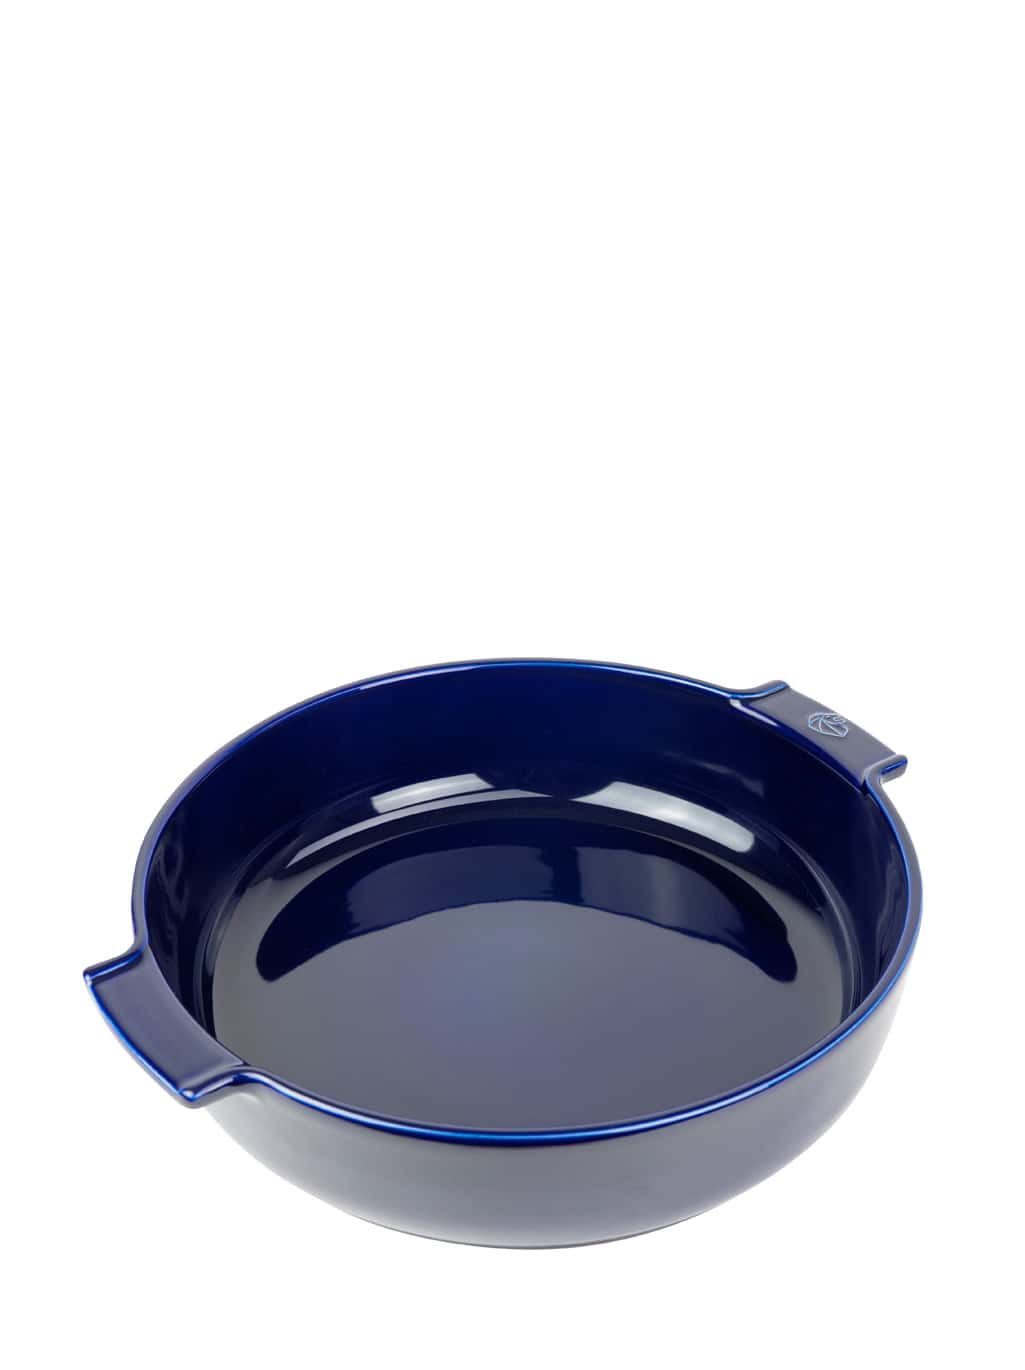 Image of Appolia Blue Ceramic Round Baking Dish, 34cm Appolia